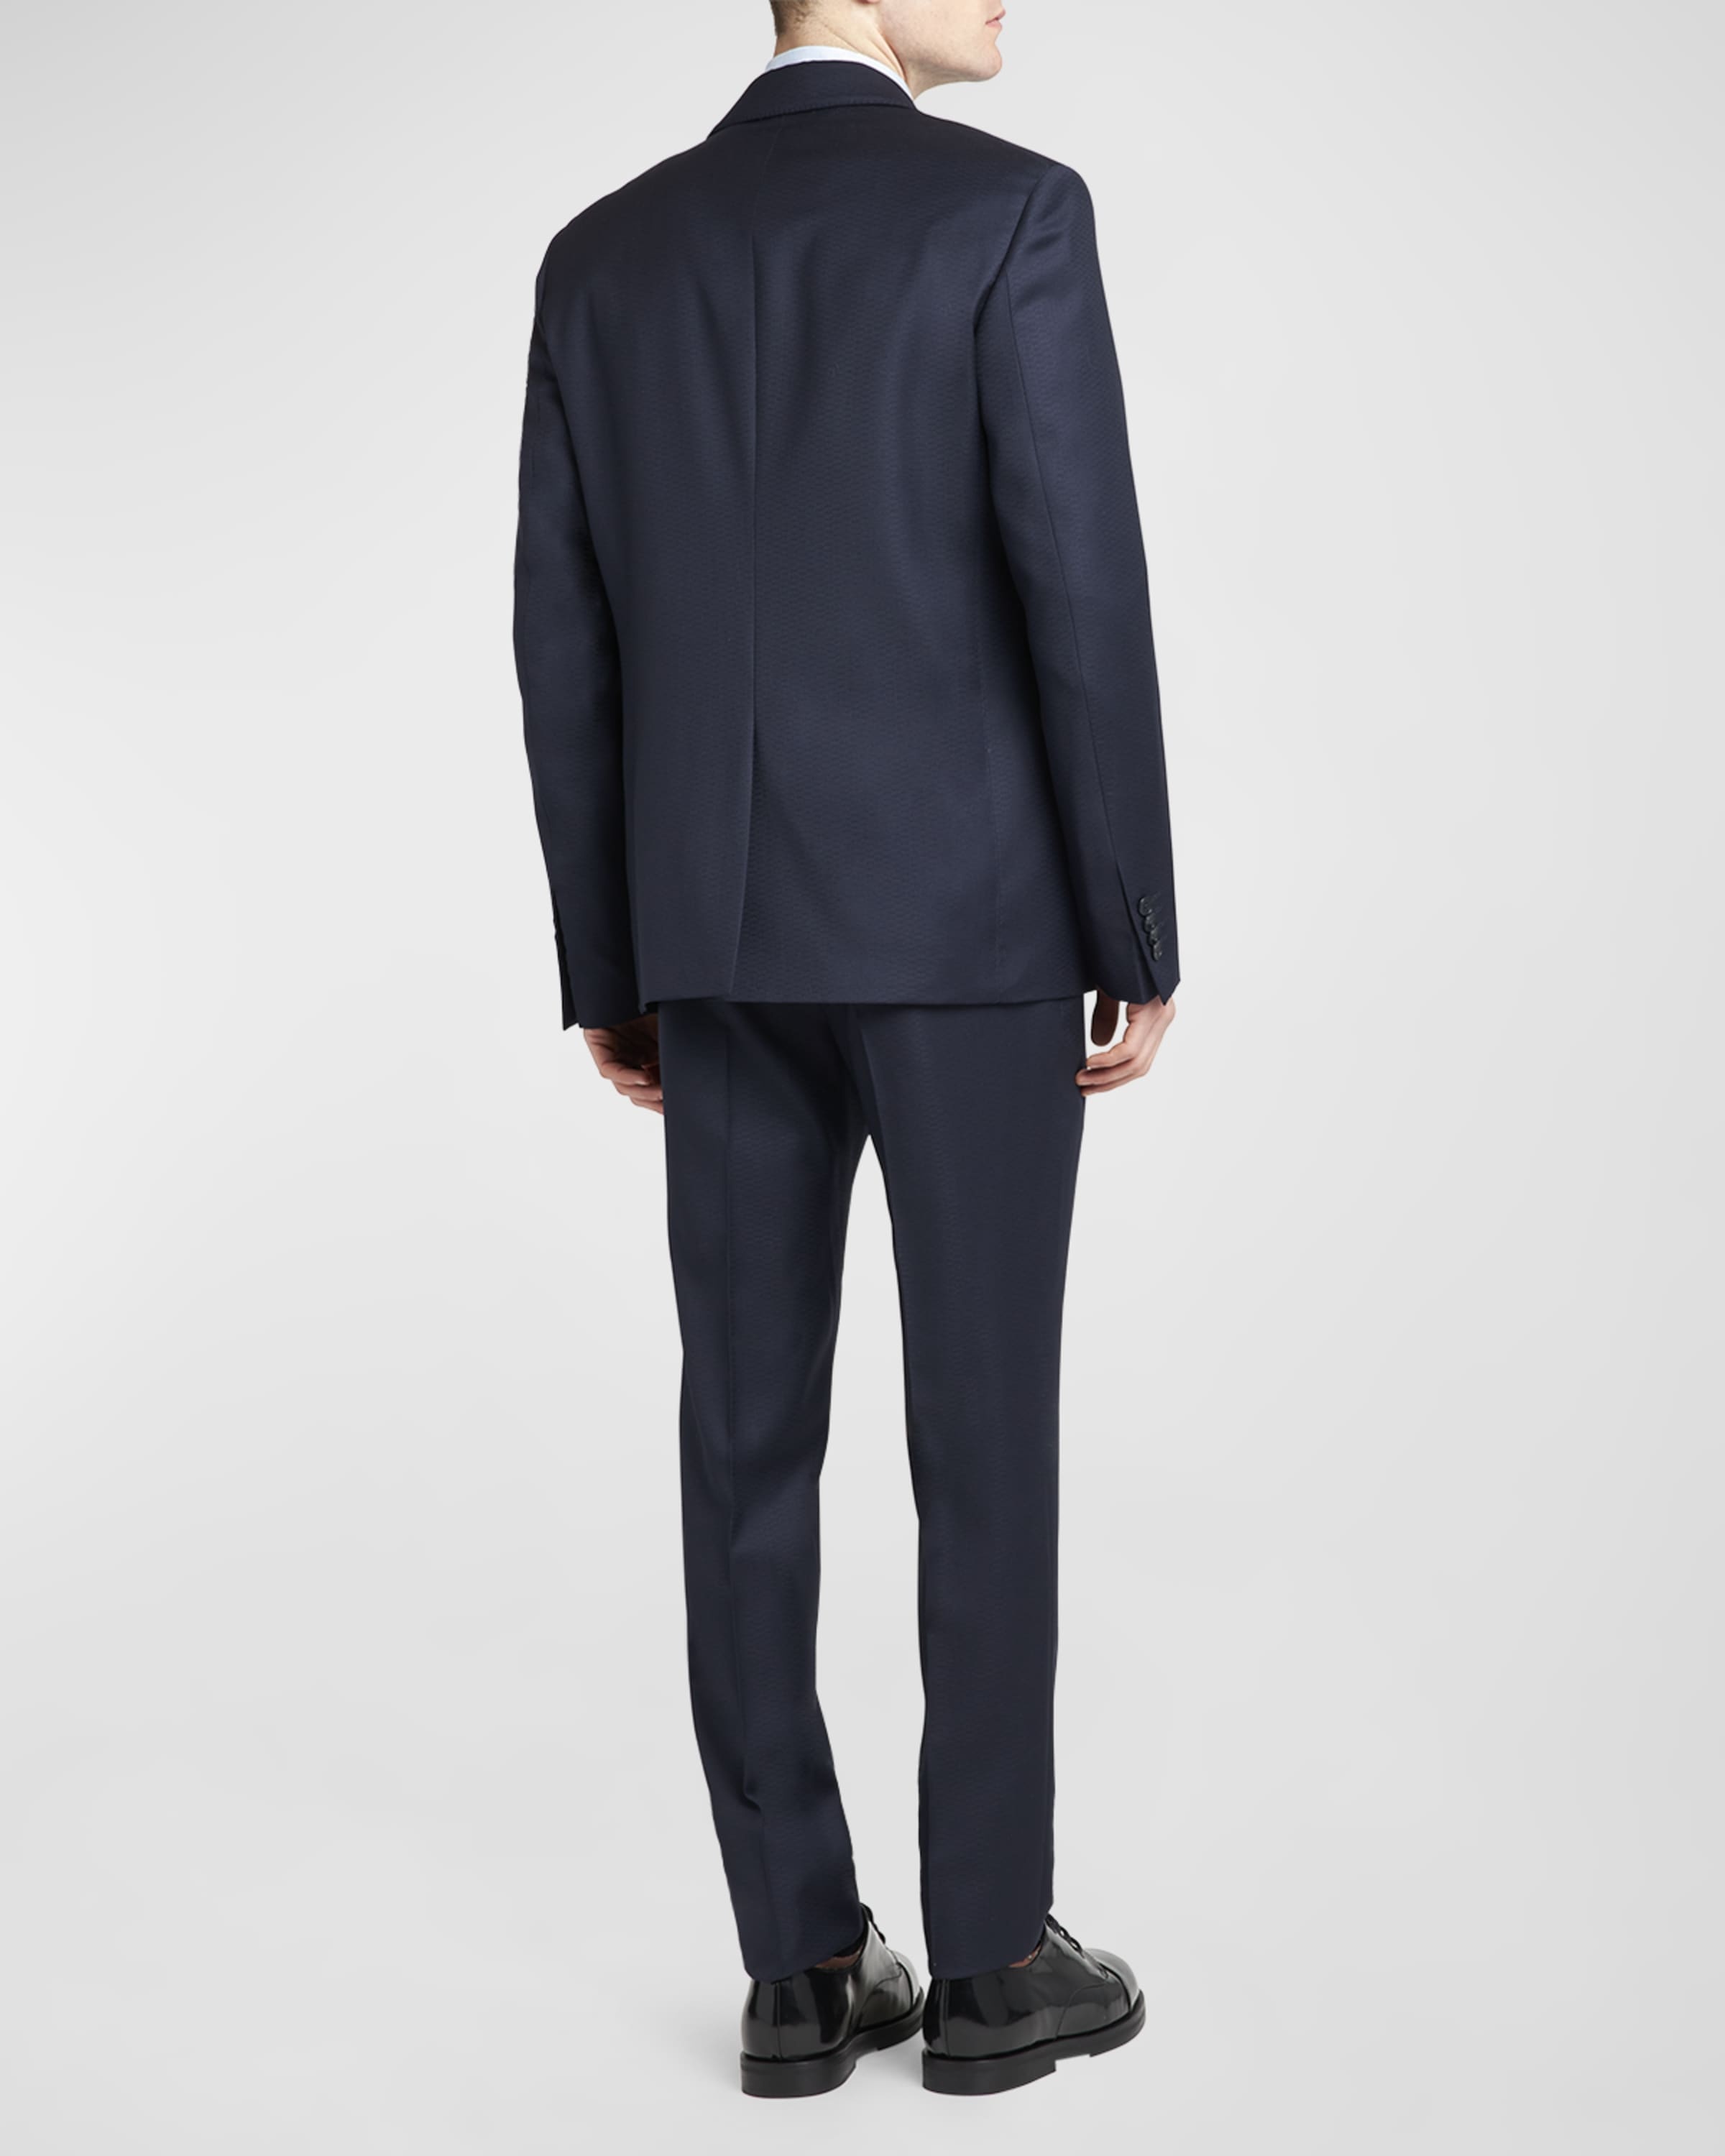 Men's Micro-Jacquard Two-Piece Suit - 4